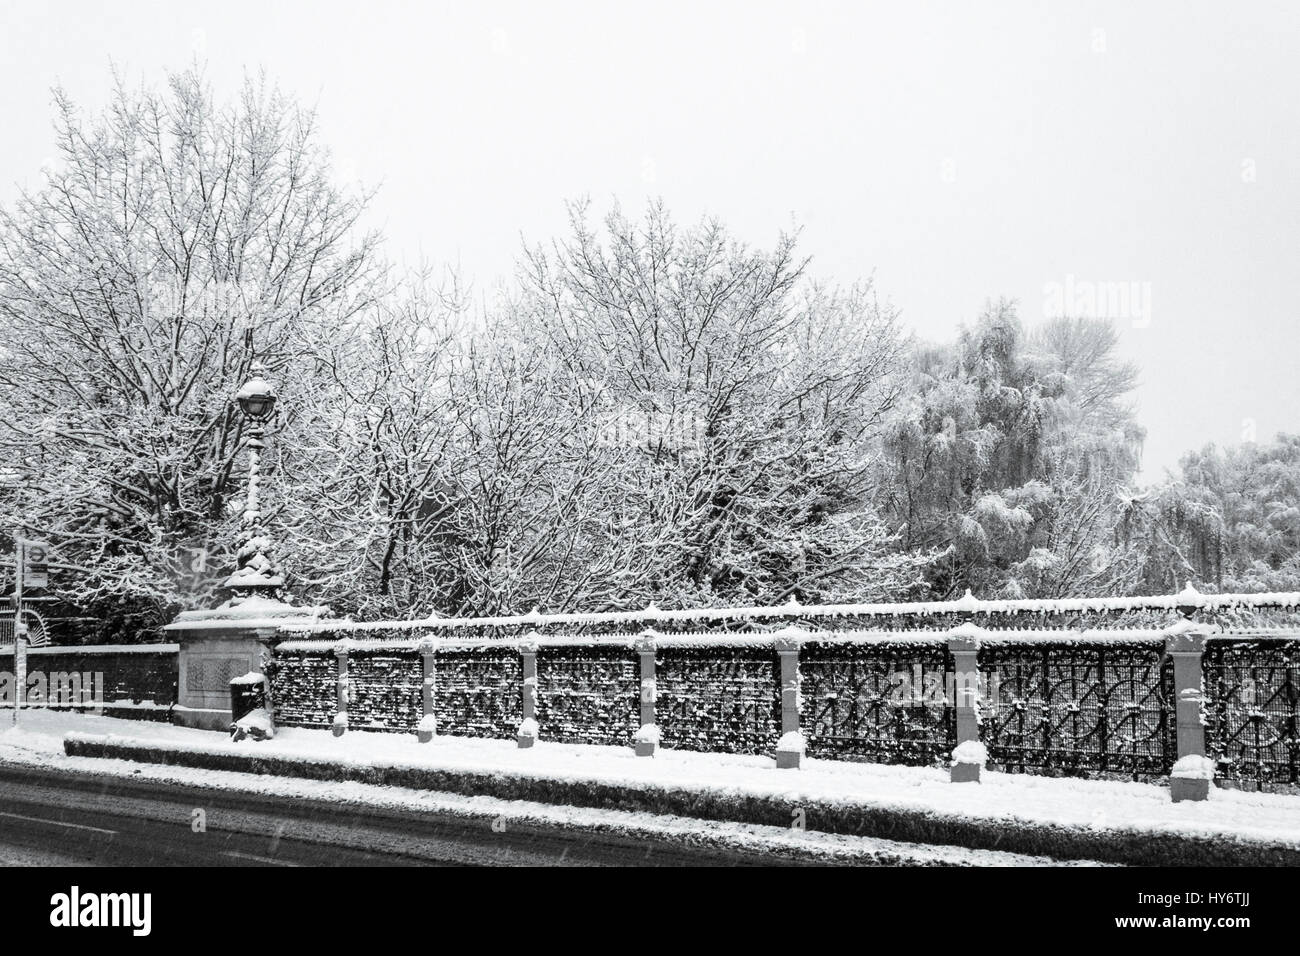 La neve sul vittoriano ponte ad arco costruito nel 1897 per sostituire il precedente John Nash bridge, portando Hornsey Lane attraverso Archway Road, London, Regno Unito Foto Stock